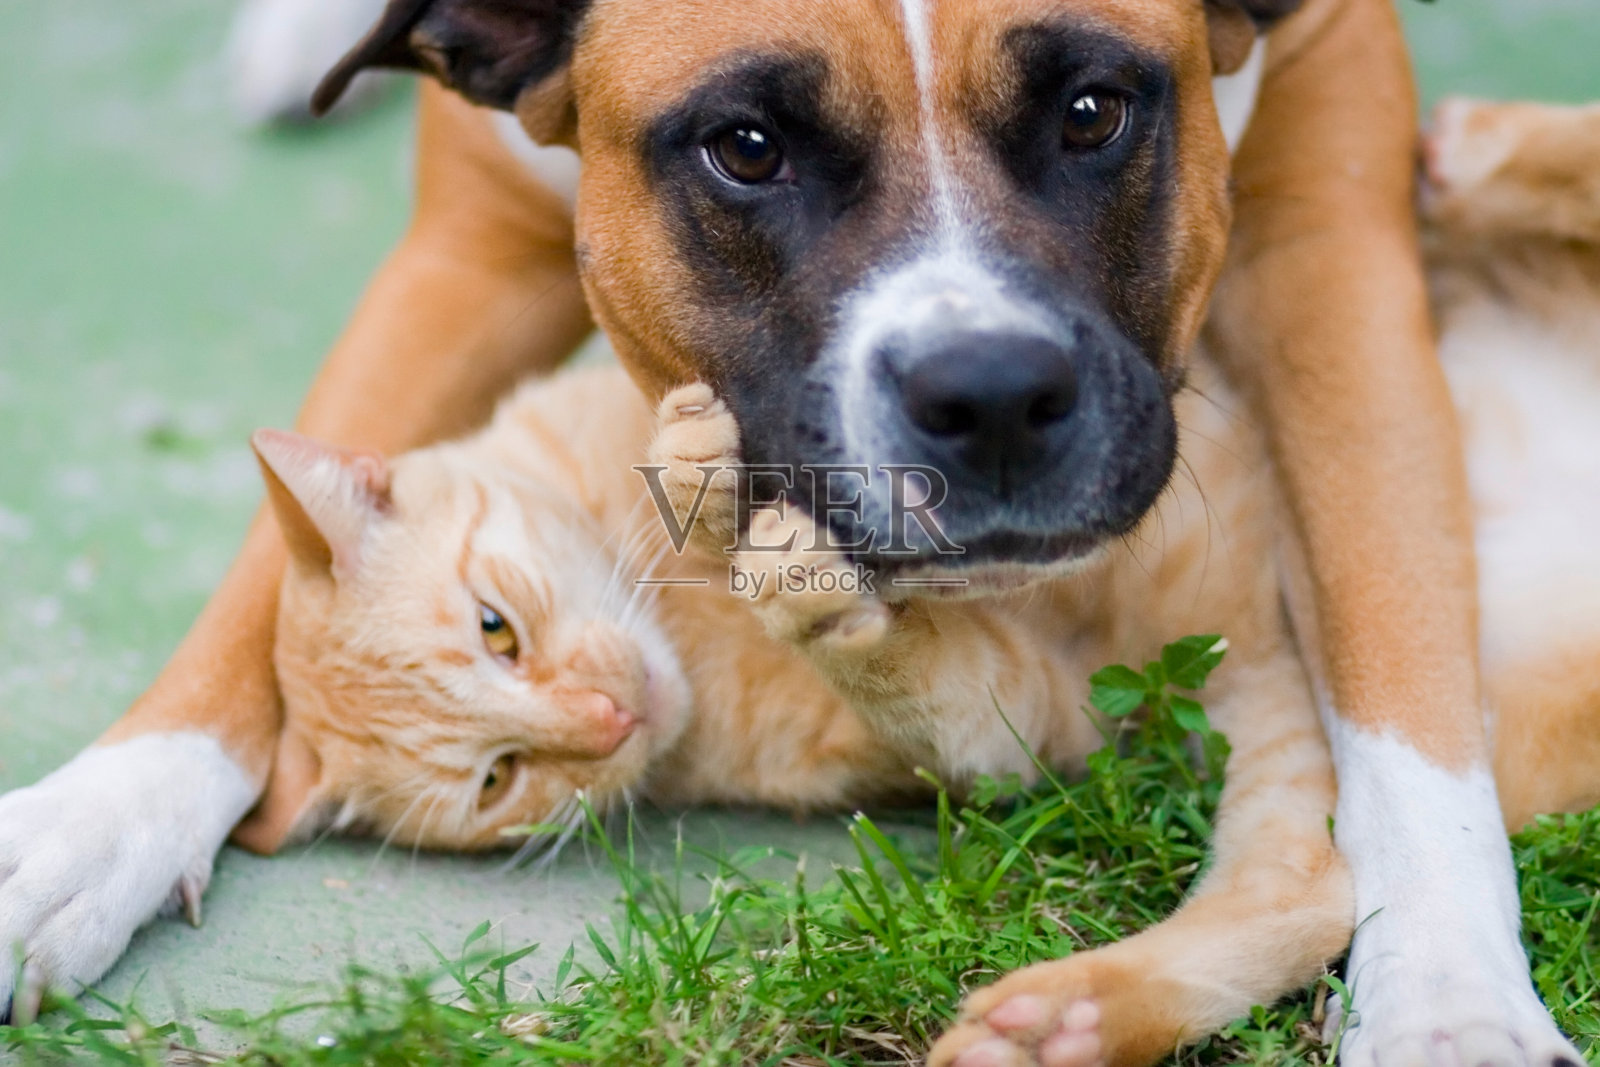 猫和狗之间的爱情照片摄影图片